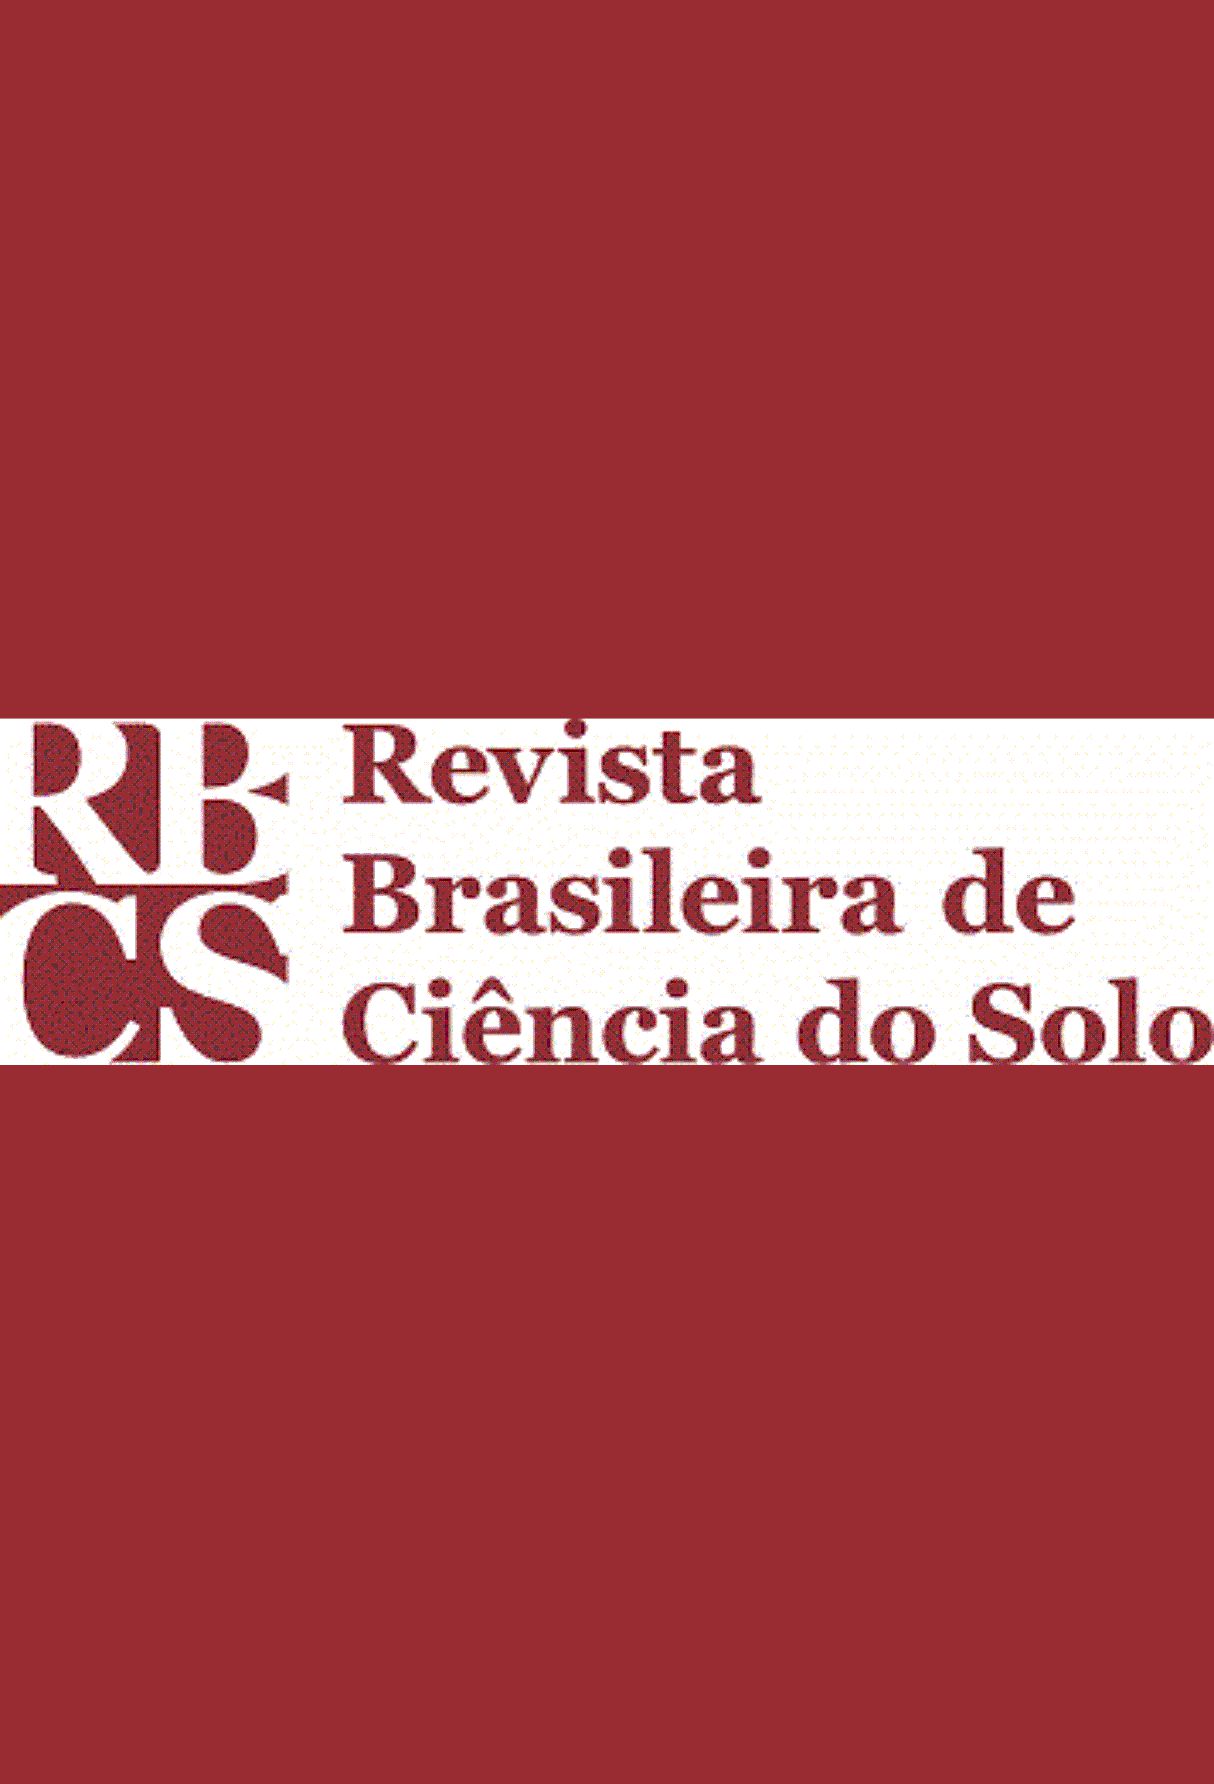 Capa: Revista Brasileira de Ciência do Solo